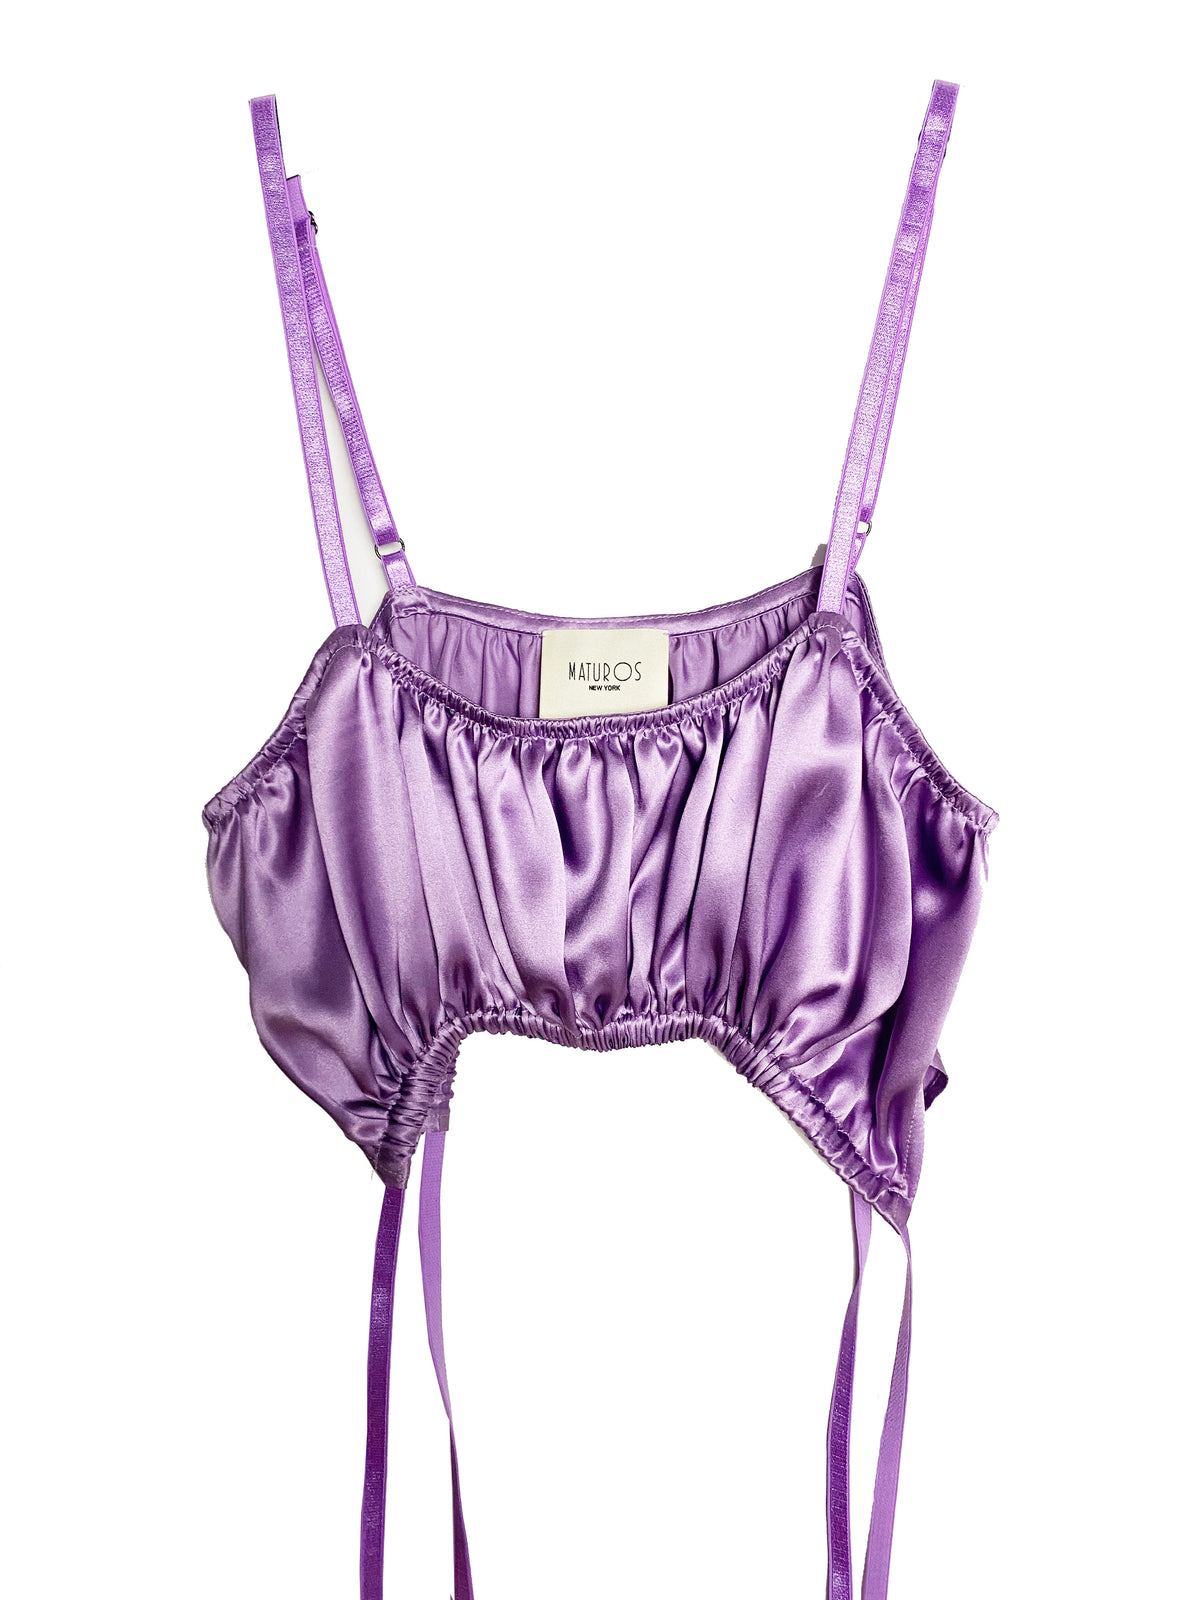 Silk bra top in purple - The Sei